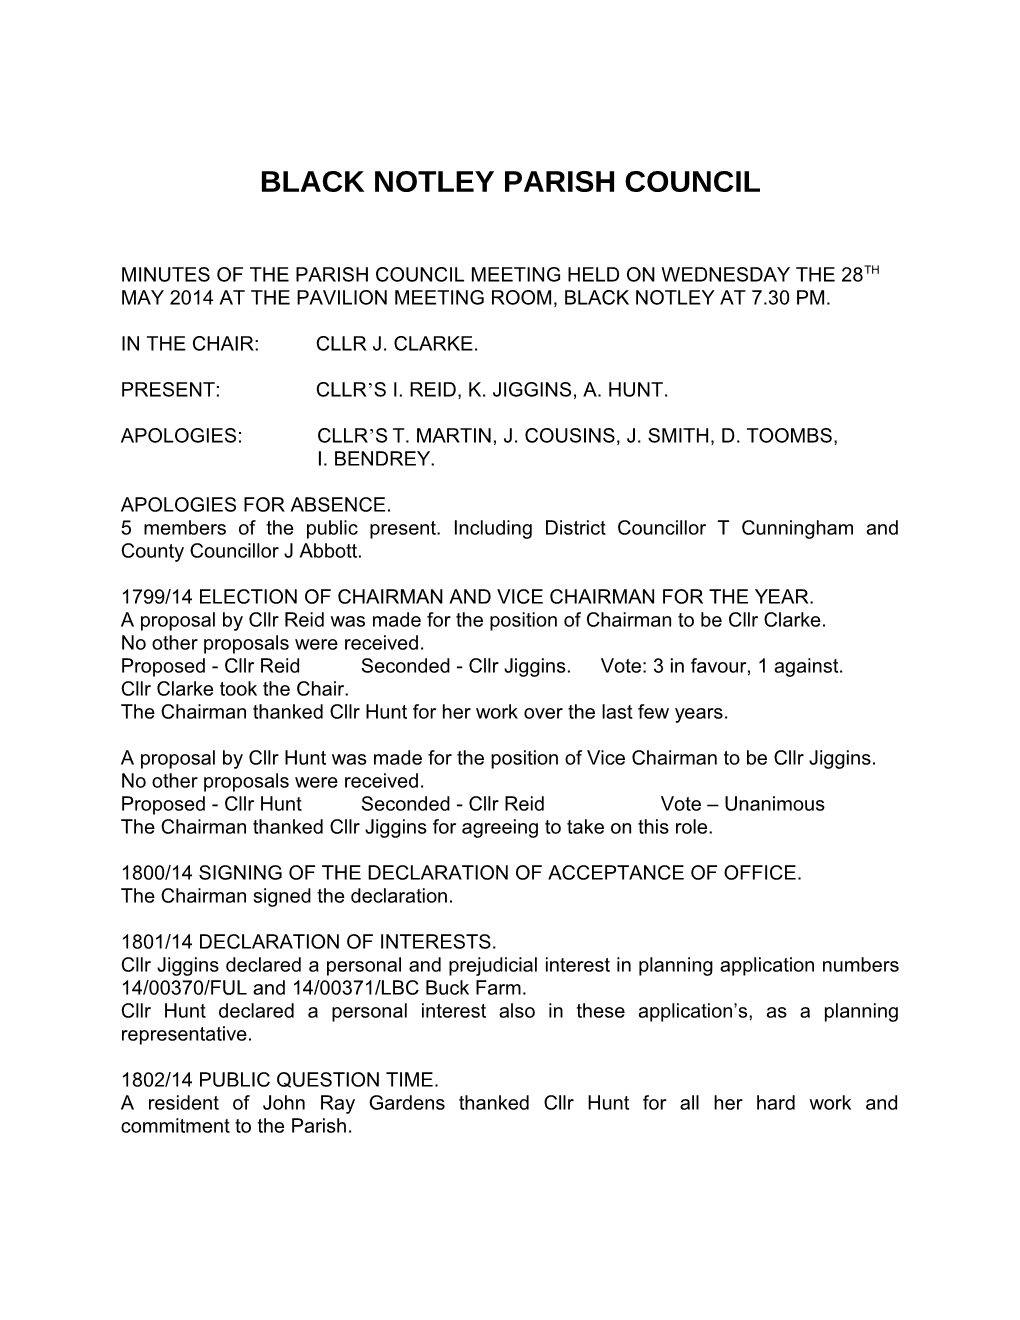 Black Notley Parish Council